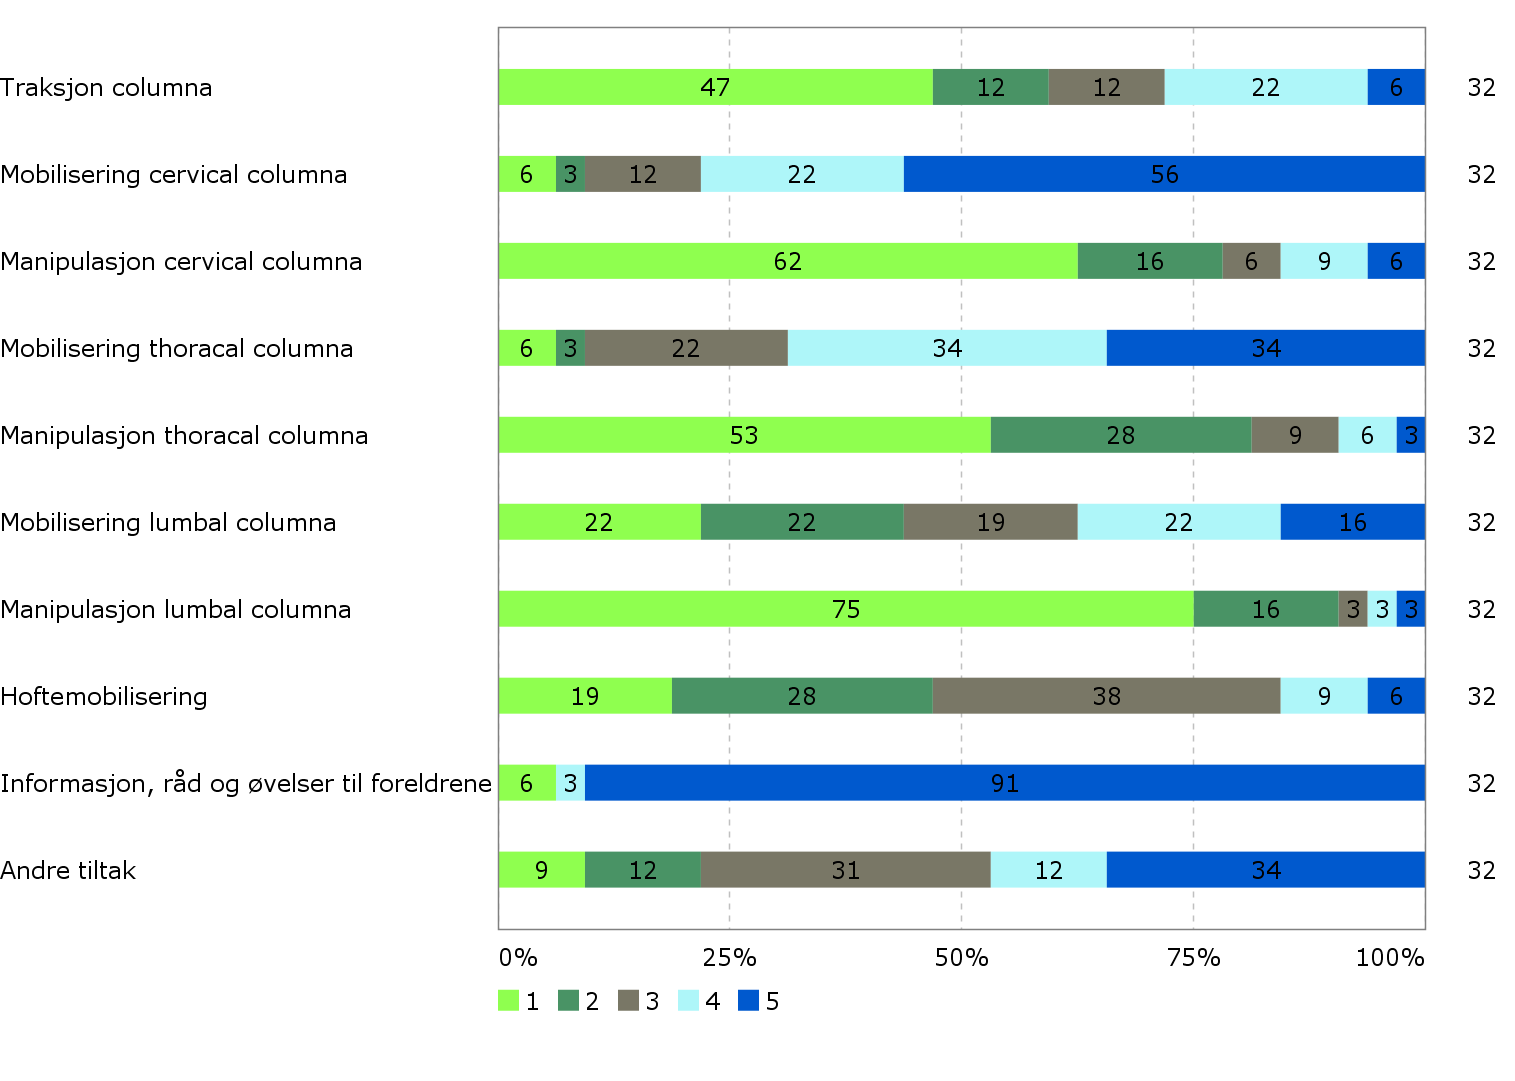 Figur 13 Behandlingstiltak av spedbarn med asymmetri over 3 måneder. Tallene i tabellen viser svar fra respondentene angitt i % fra 1 til 5. 1 (lys grønn) = Benytter aldri behandlingstiltaket.